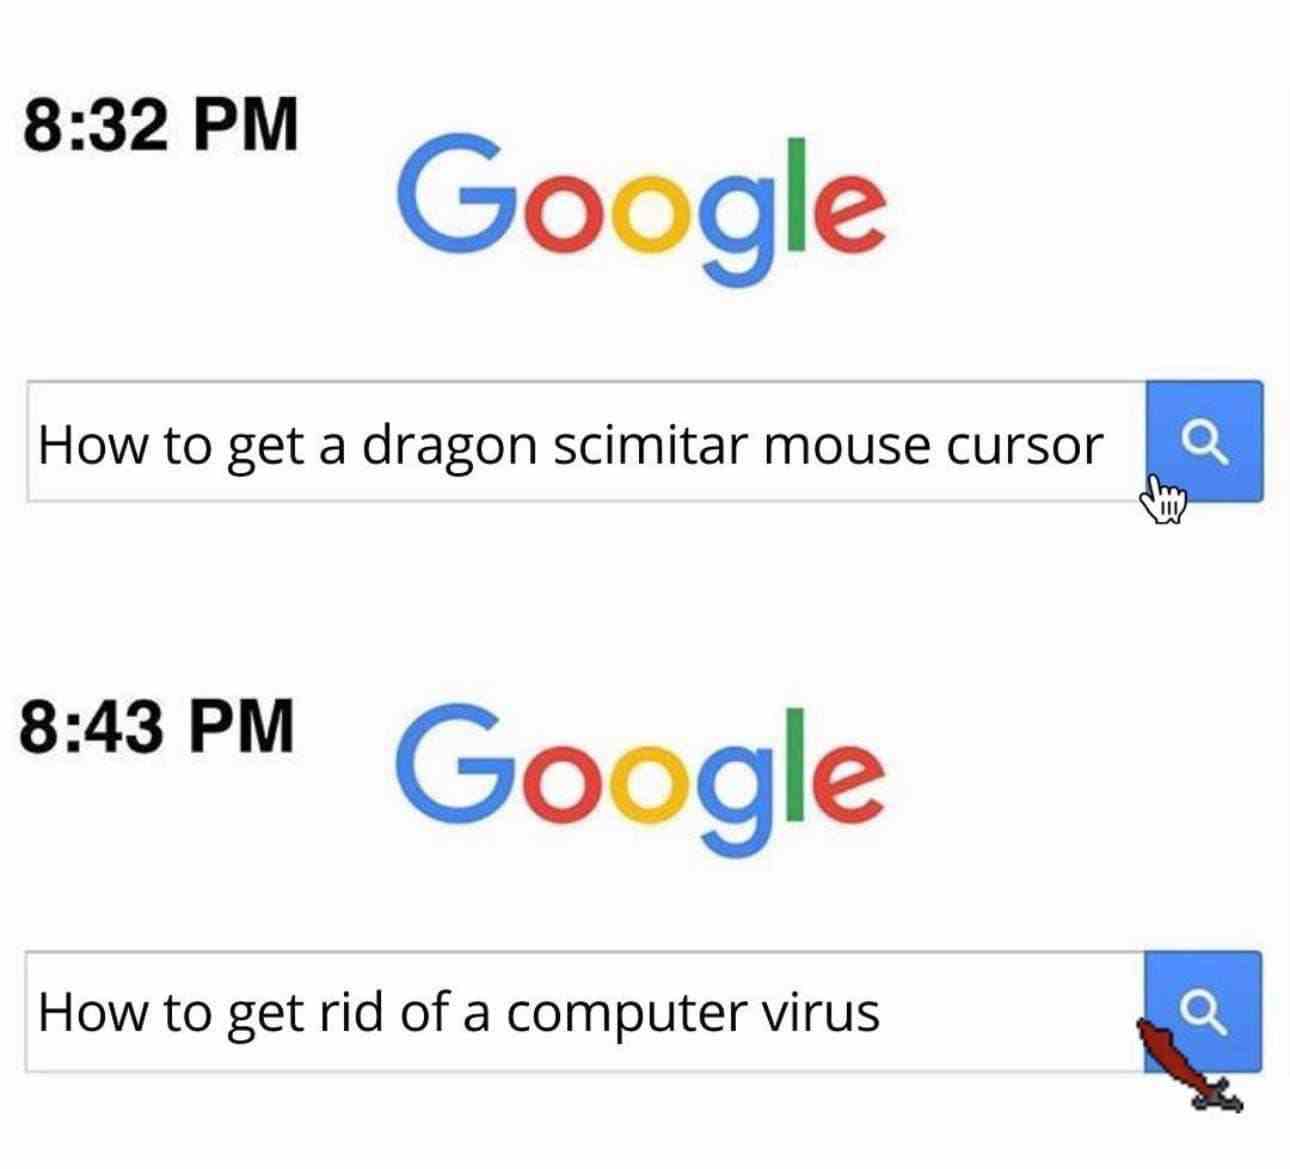 How to get a dragon scimitar mouse cursor